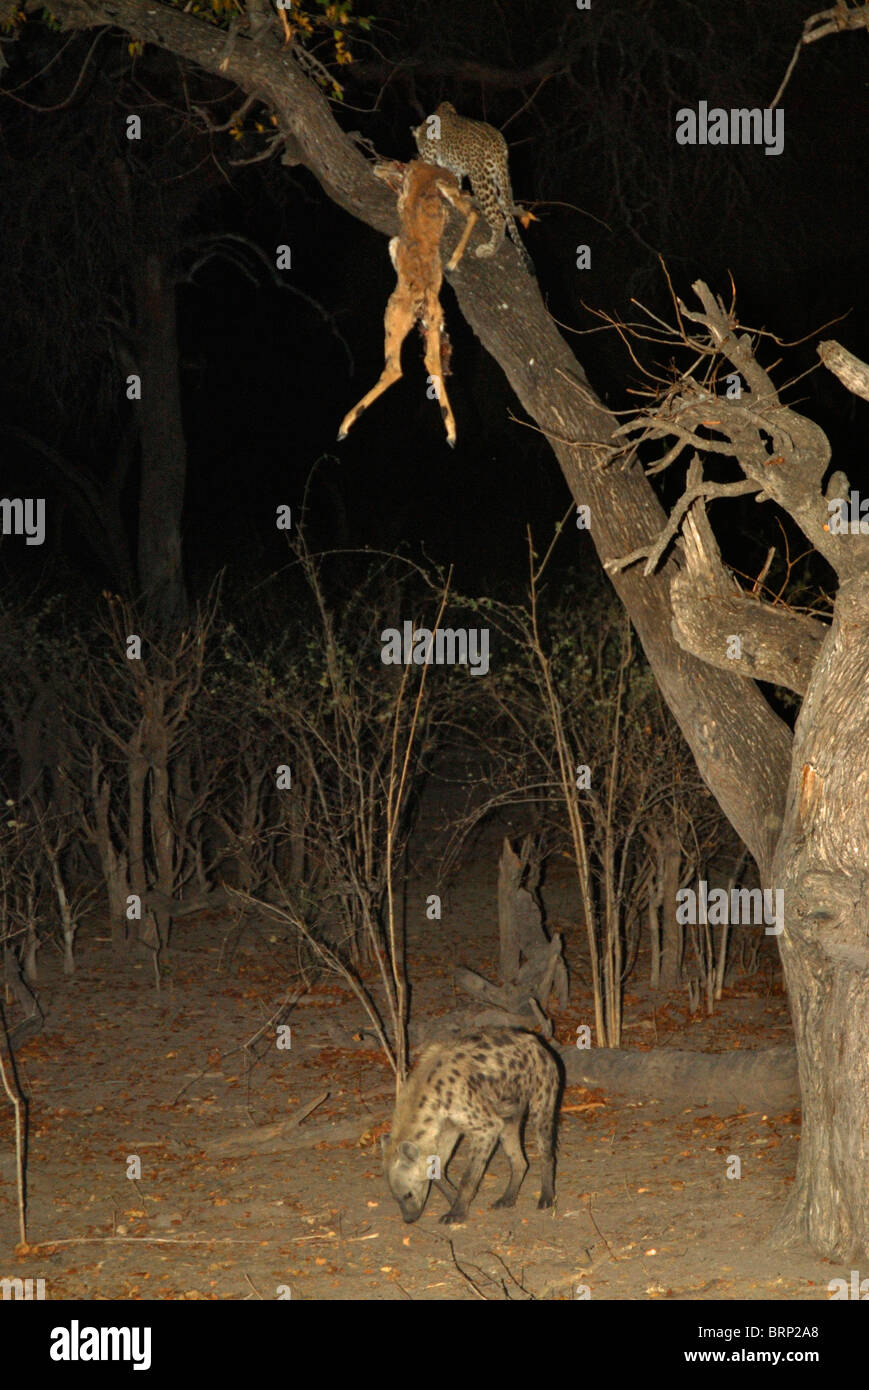 Homme leopard avec impala tuer dans l'arbre, l'hyène tachetée ci-dessous Banque D'Images